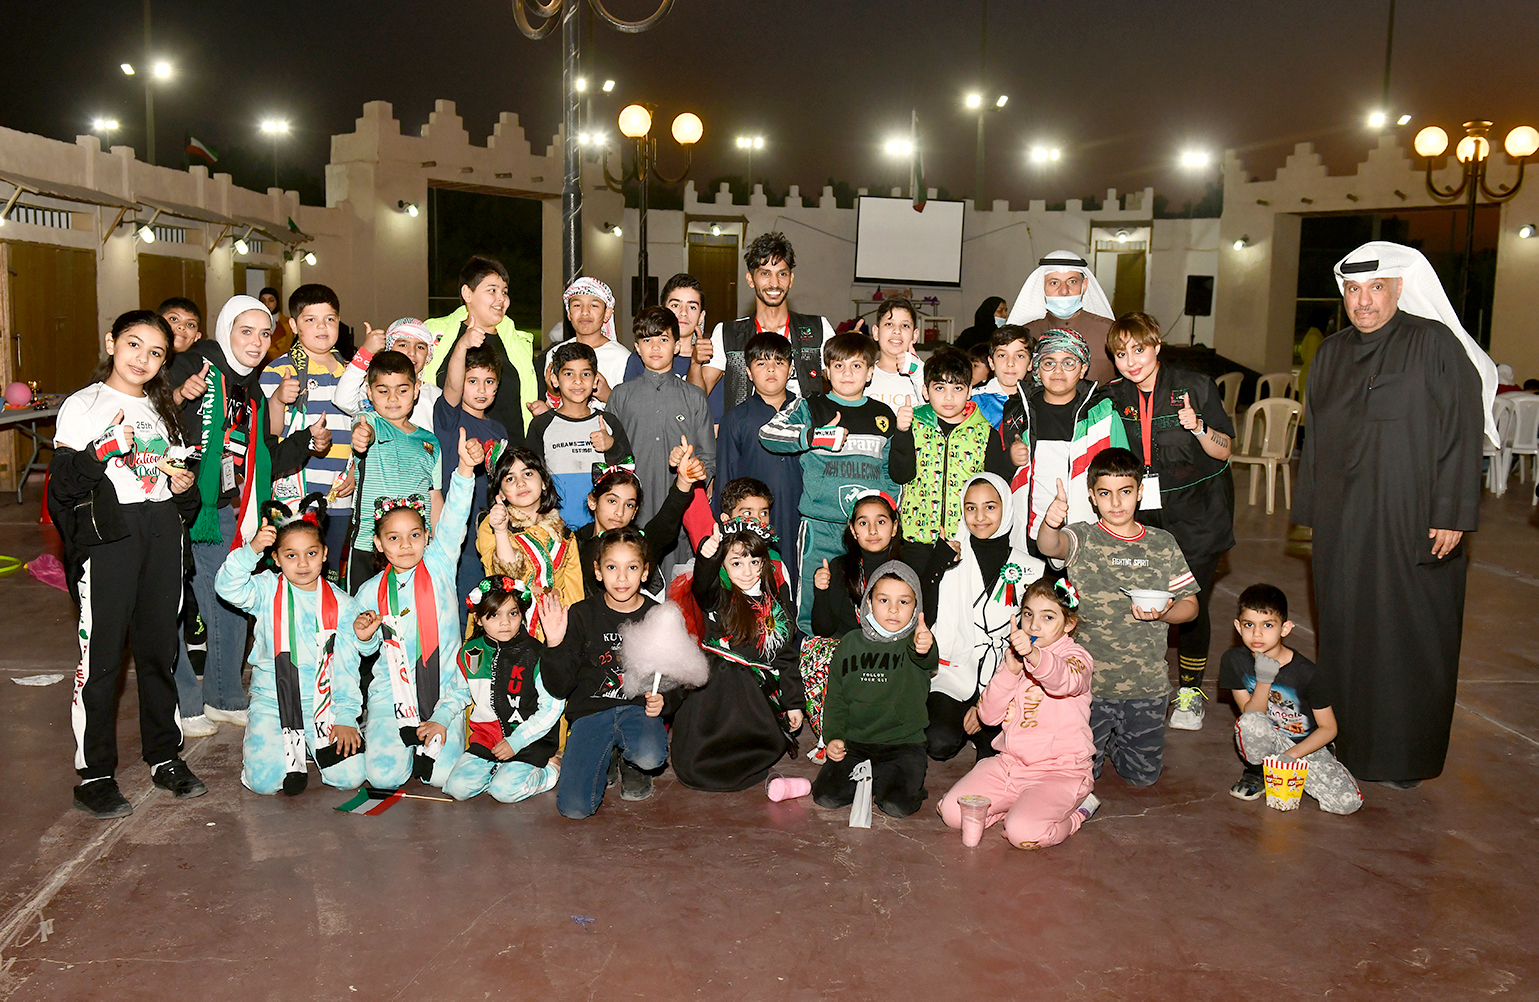 Academy of Voluntary Work celebrates Kuwait's national days